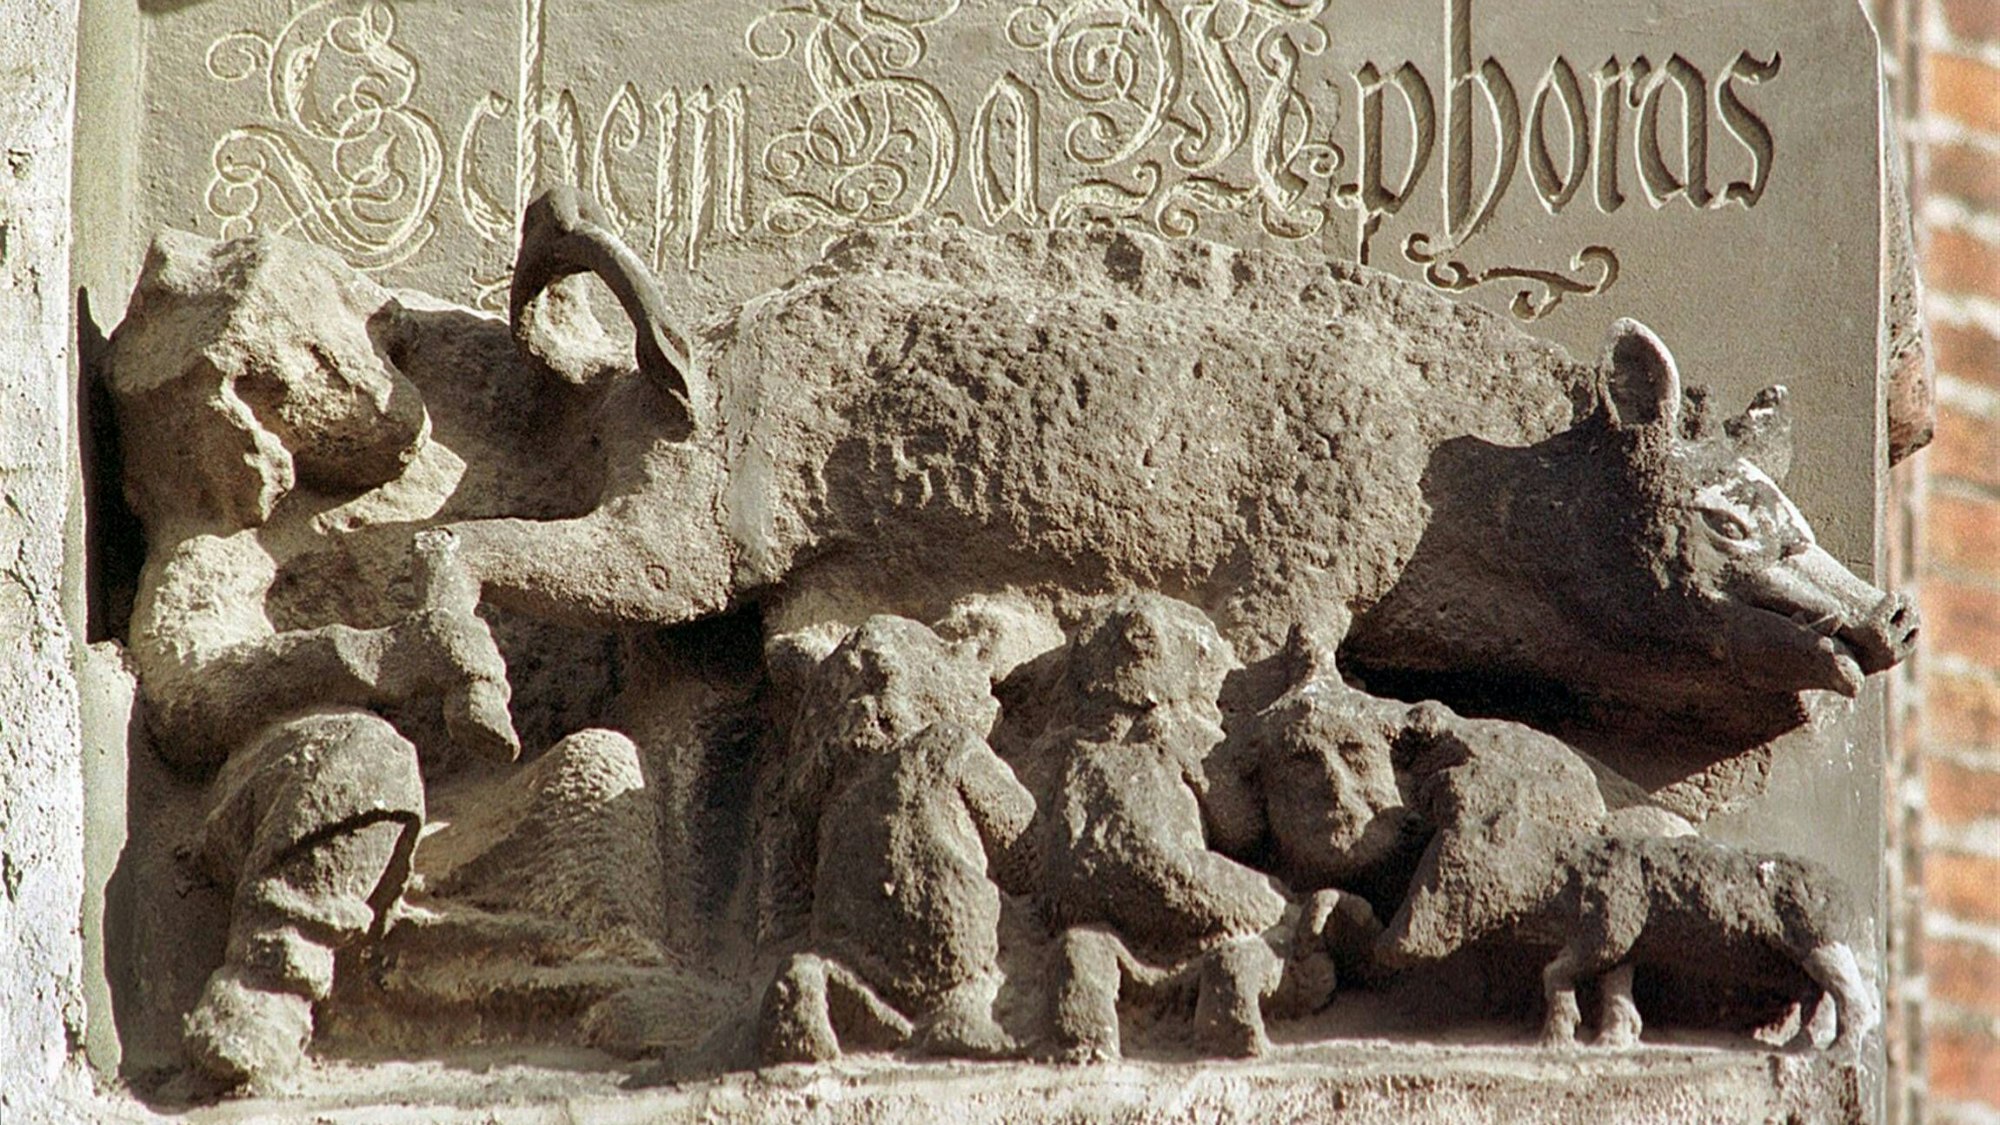 Judensau an der Stadtkirche St. Marien in der Lutherstadt Wittenberg (Sachsen-Anhalt) mit der Inschrift Rabini, Schem Ha Mphoras (hebr. der unverstellte Name).